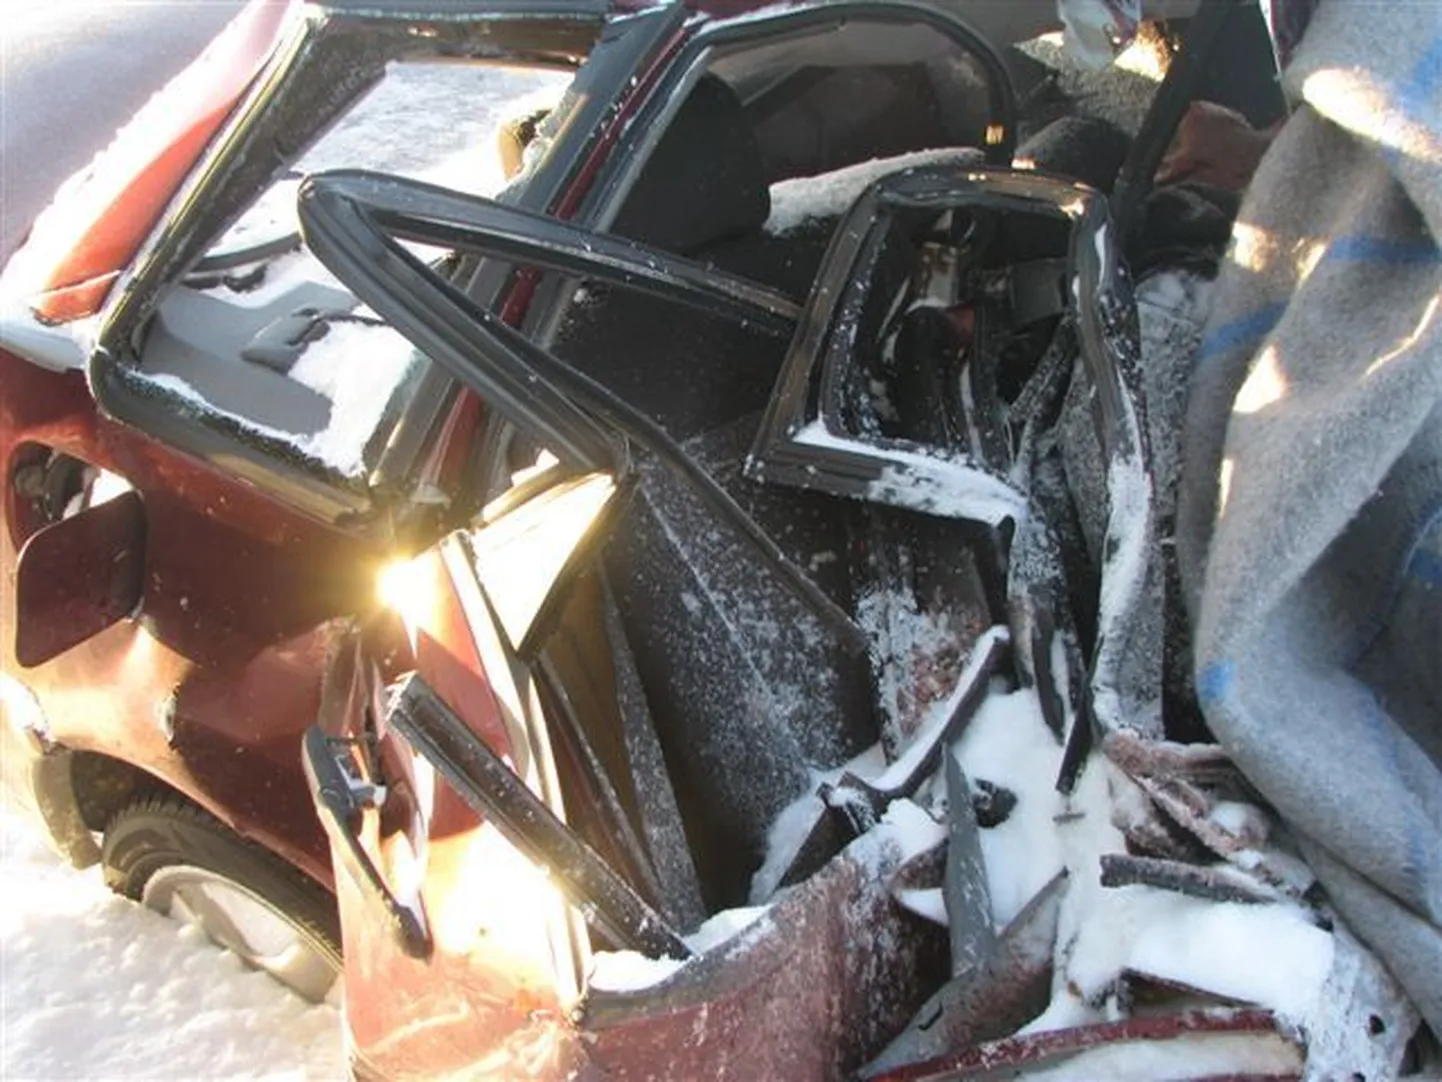 Jõgeva-Palamuse-Saare tee 3. kilomeetril hukkus  sõiduauto ja veoki kokkupõrkes kaks inimest.